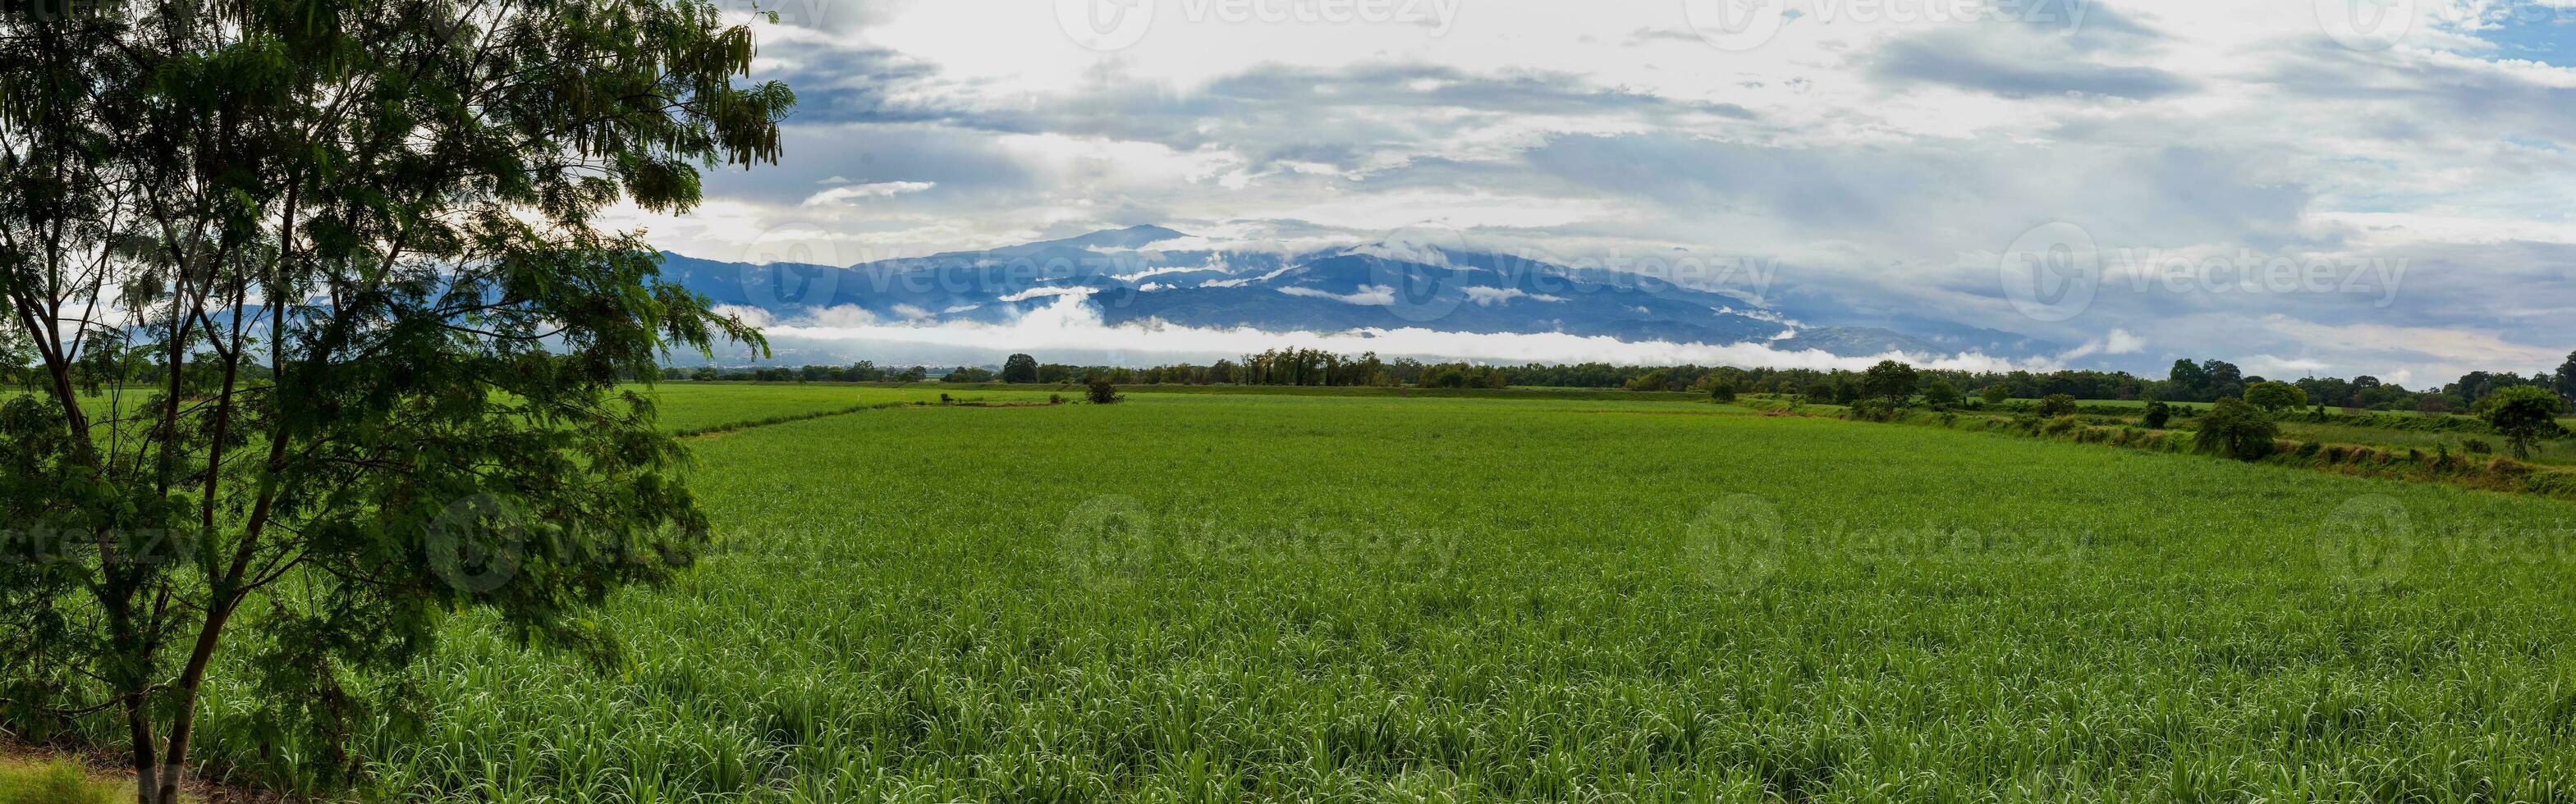 Zucker Stock Feld und das majestätisch Berge beim das Tal del cauca Region im Kolumbien foto